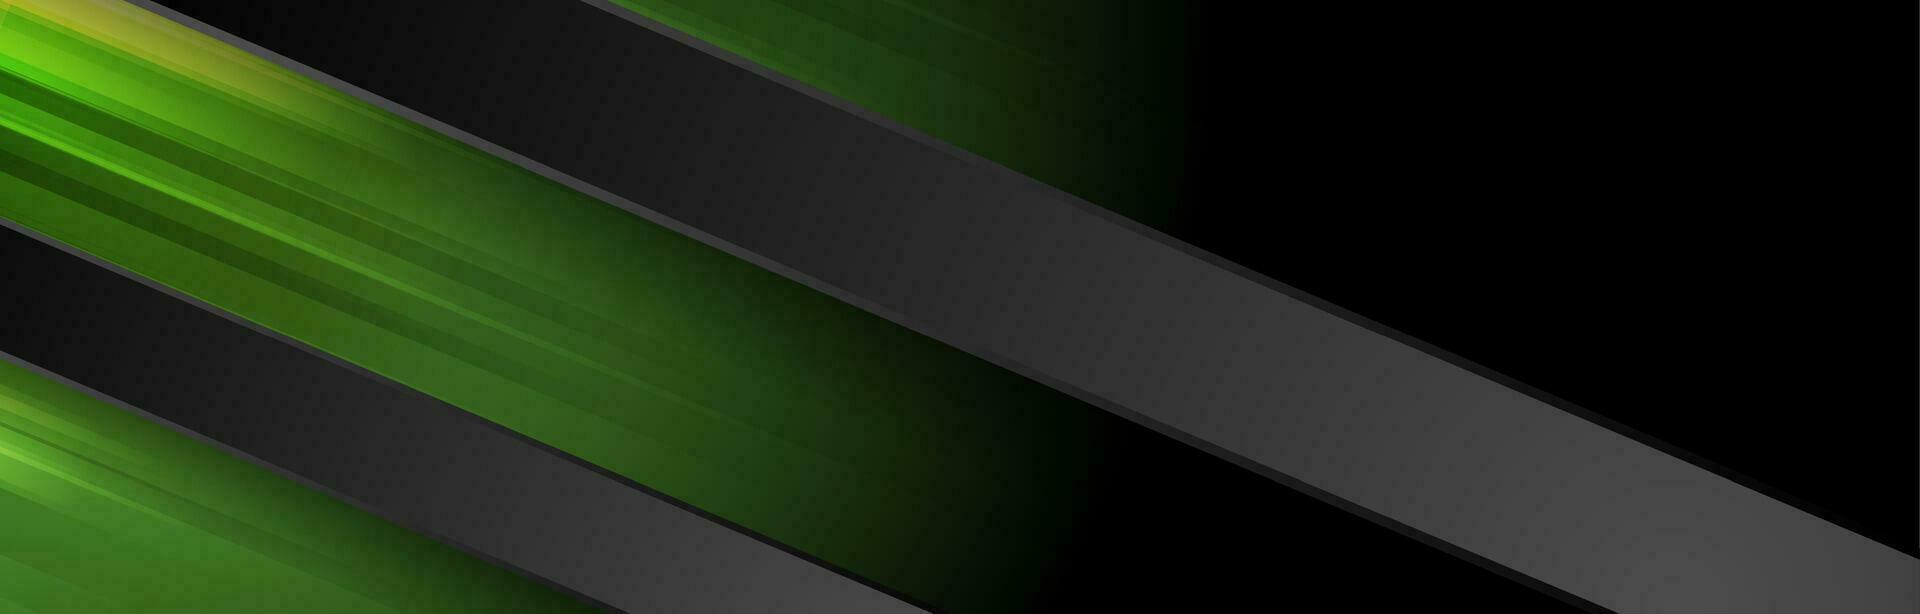 dunkel Grün und schwarz abstrakt gestreift Hintergrund vektor